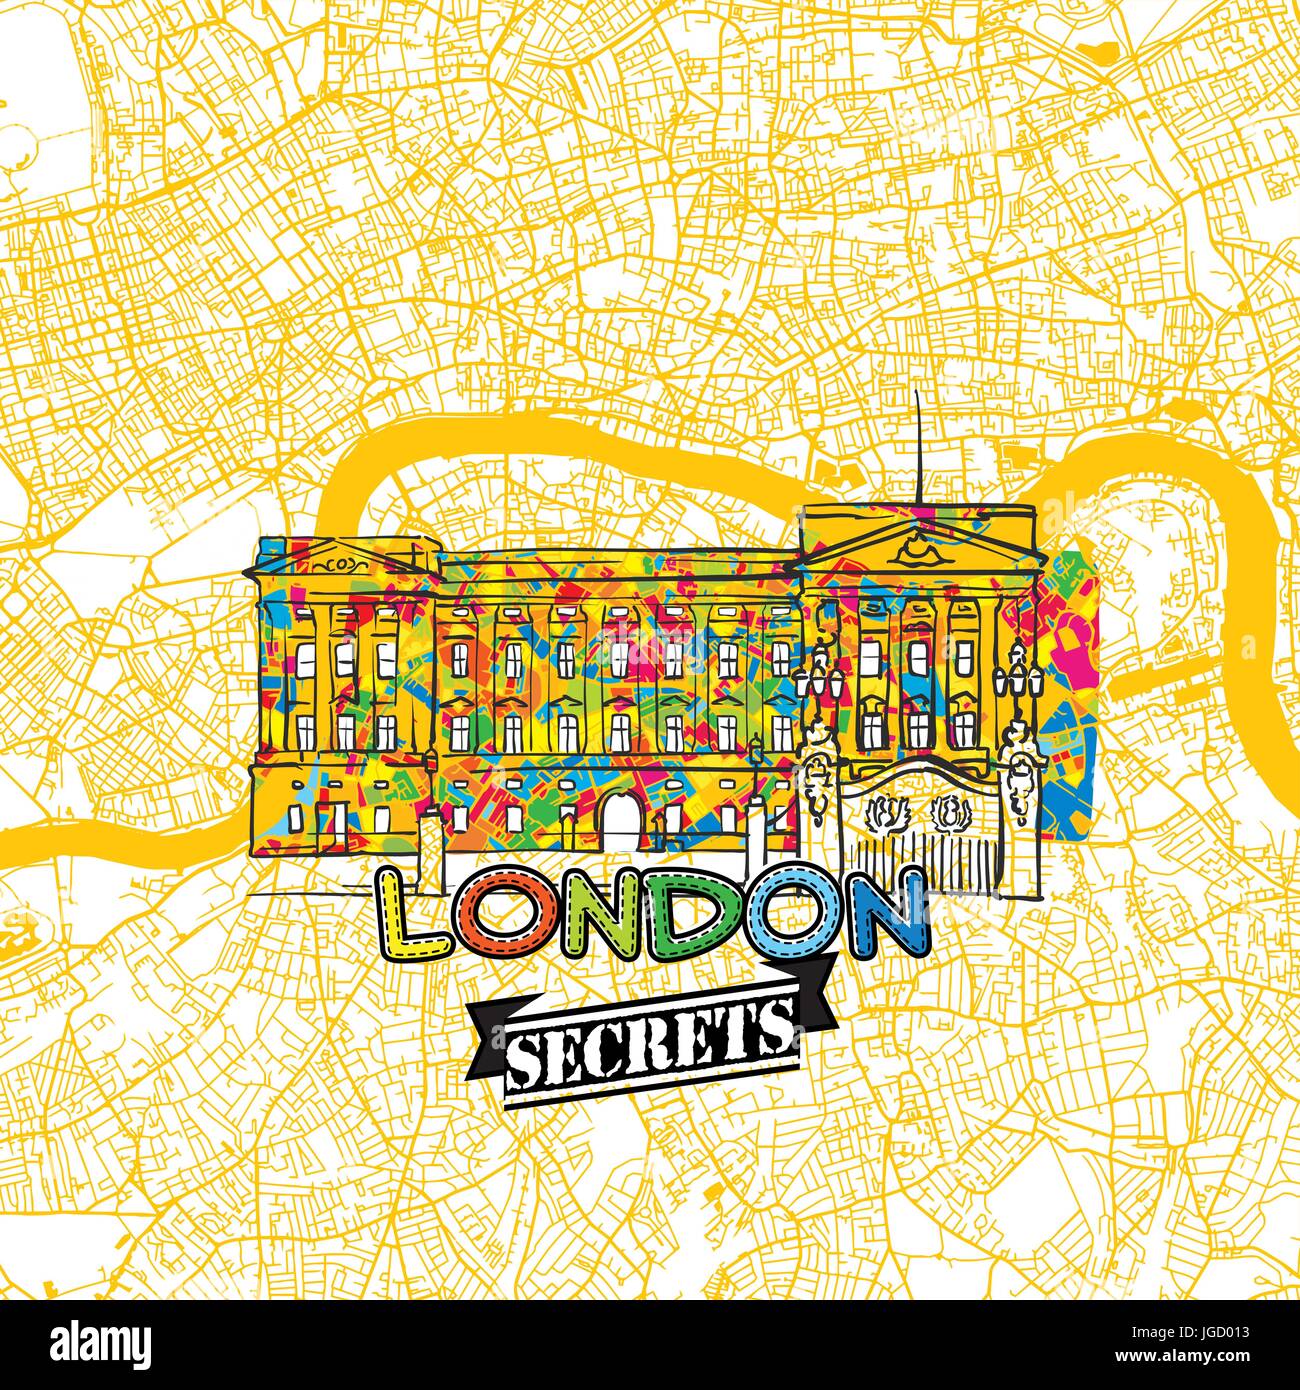 London reisen Geheimnisse Art Map für die Zuordnung von Experten und Reiseführer. Handgemachte Stadt Logo, Typo-Abzeichen und Hand gezeichnete Vektor-Bild an der Spitze sind gruppiert und Stock Vektor